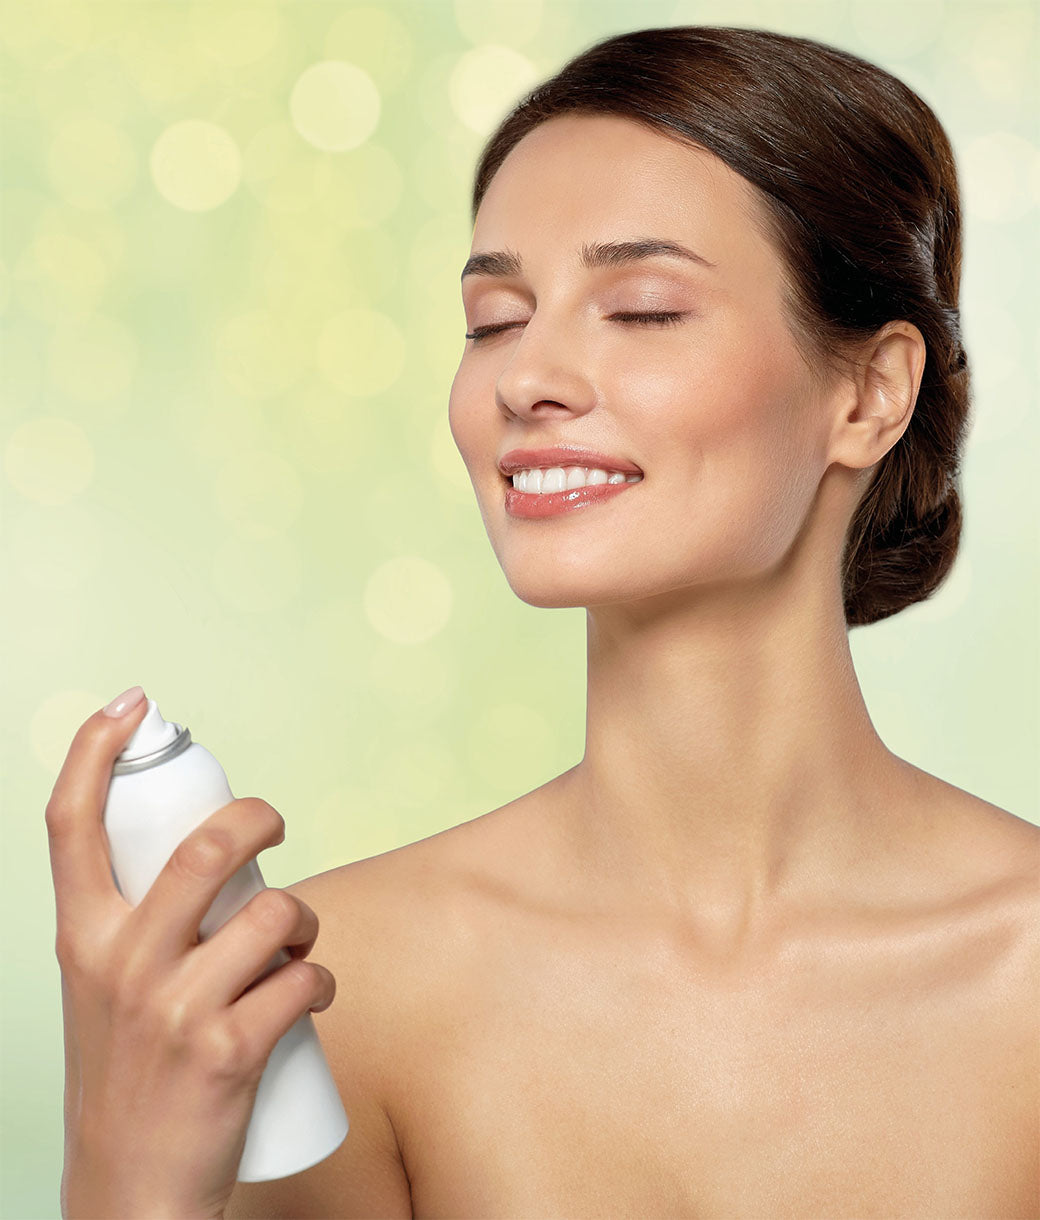 Rivela la tua bellezza Istantaneamente con la COLLEZIONE GOLDSUN Cosmetica Abbronzante Istantanea Spray Biomed